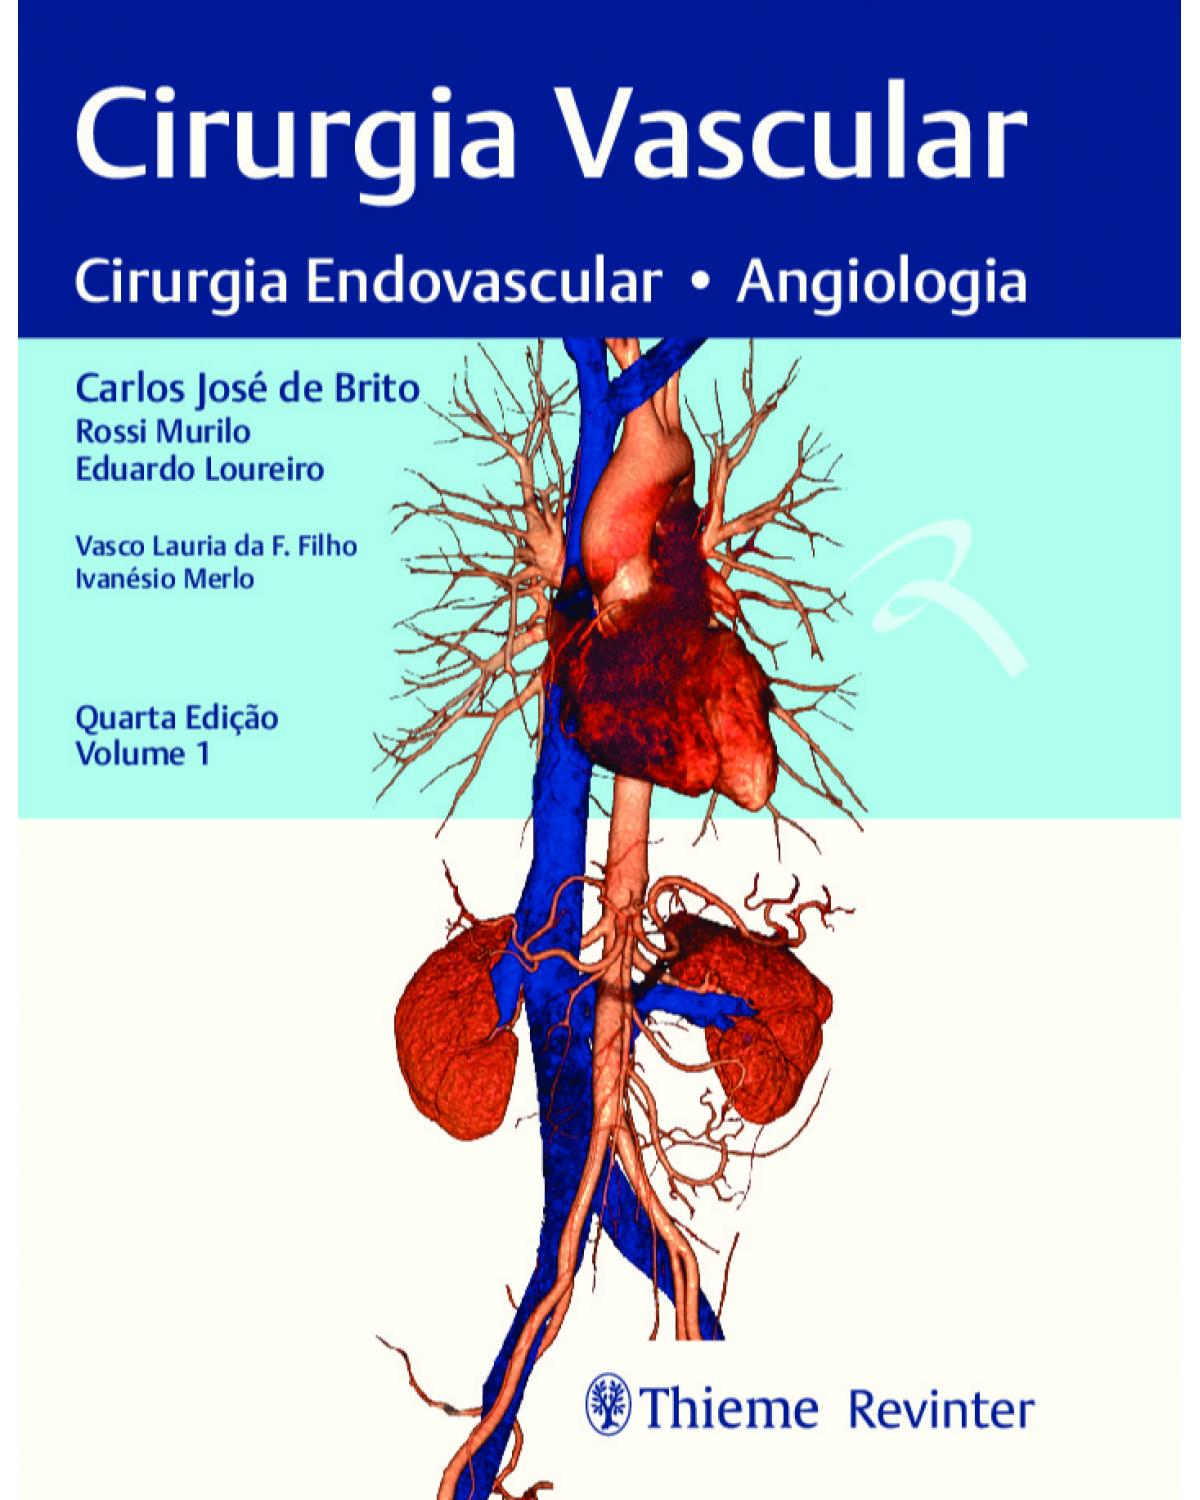 Cirurgia vascular - cirurgia endovascular, angiologia - 4ª Edição | 2020